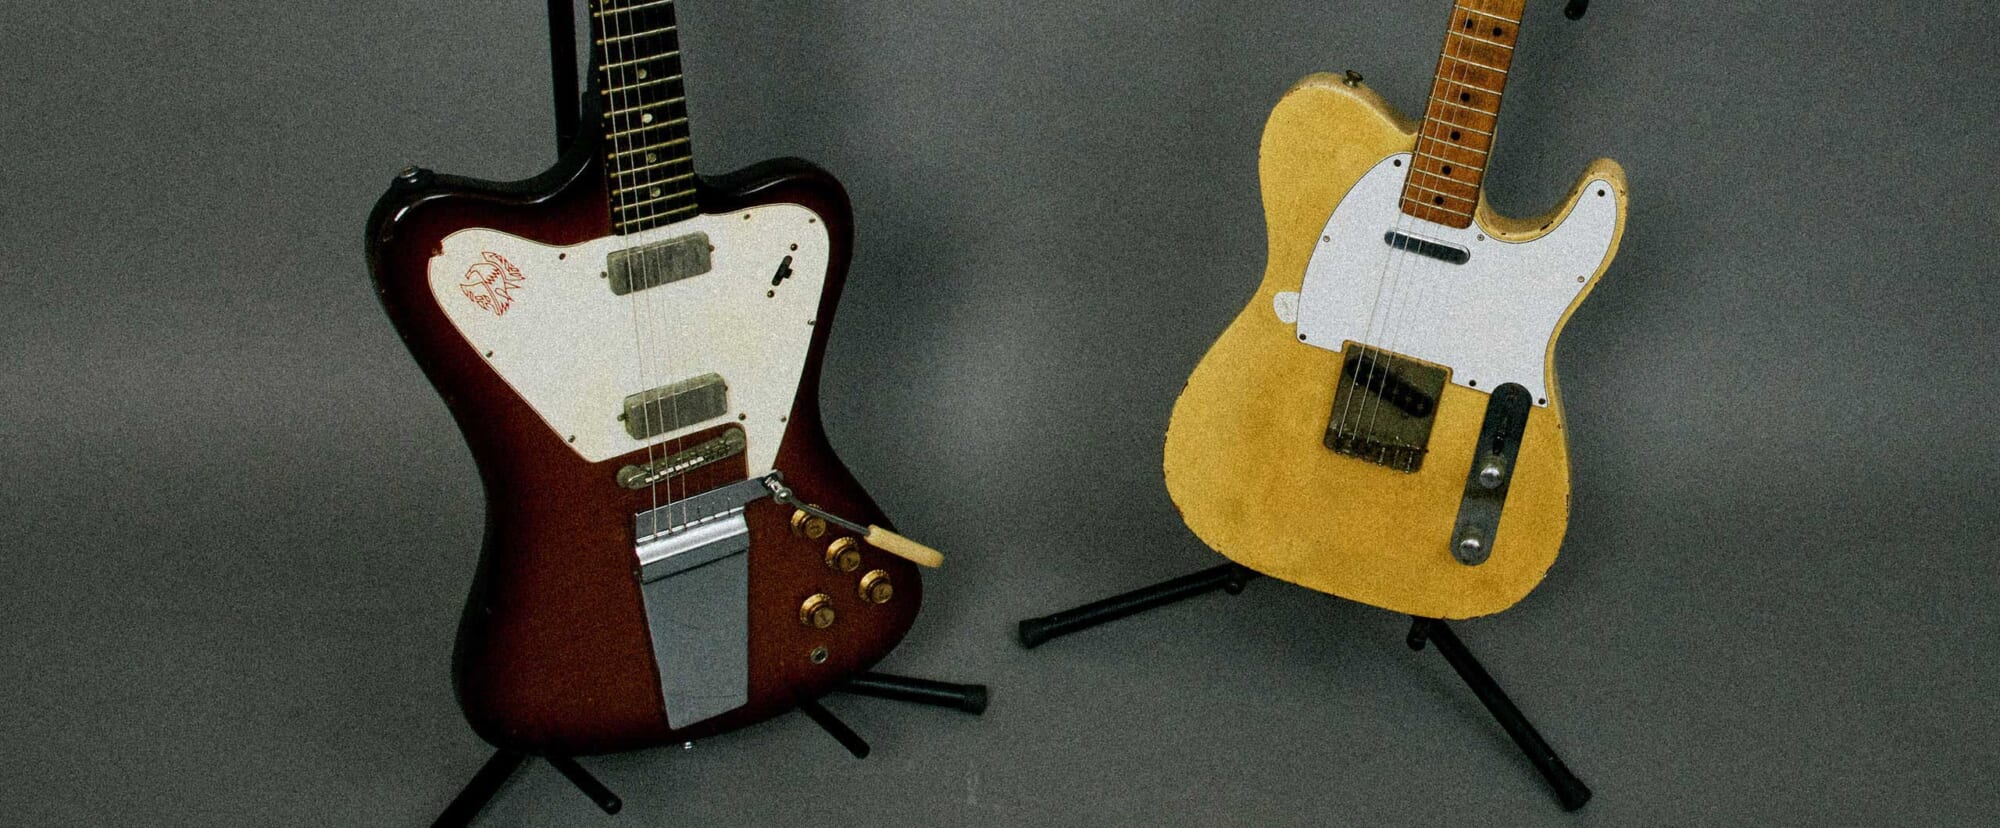 ロンバケで使われたエレキ・ギターについて。